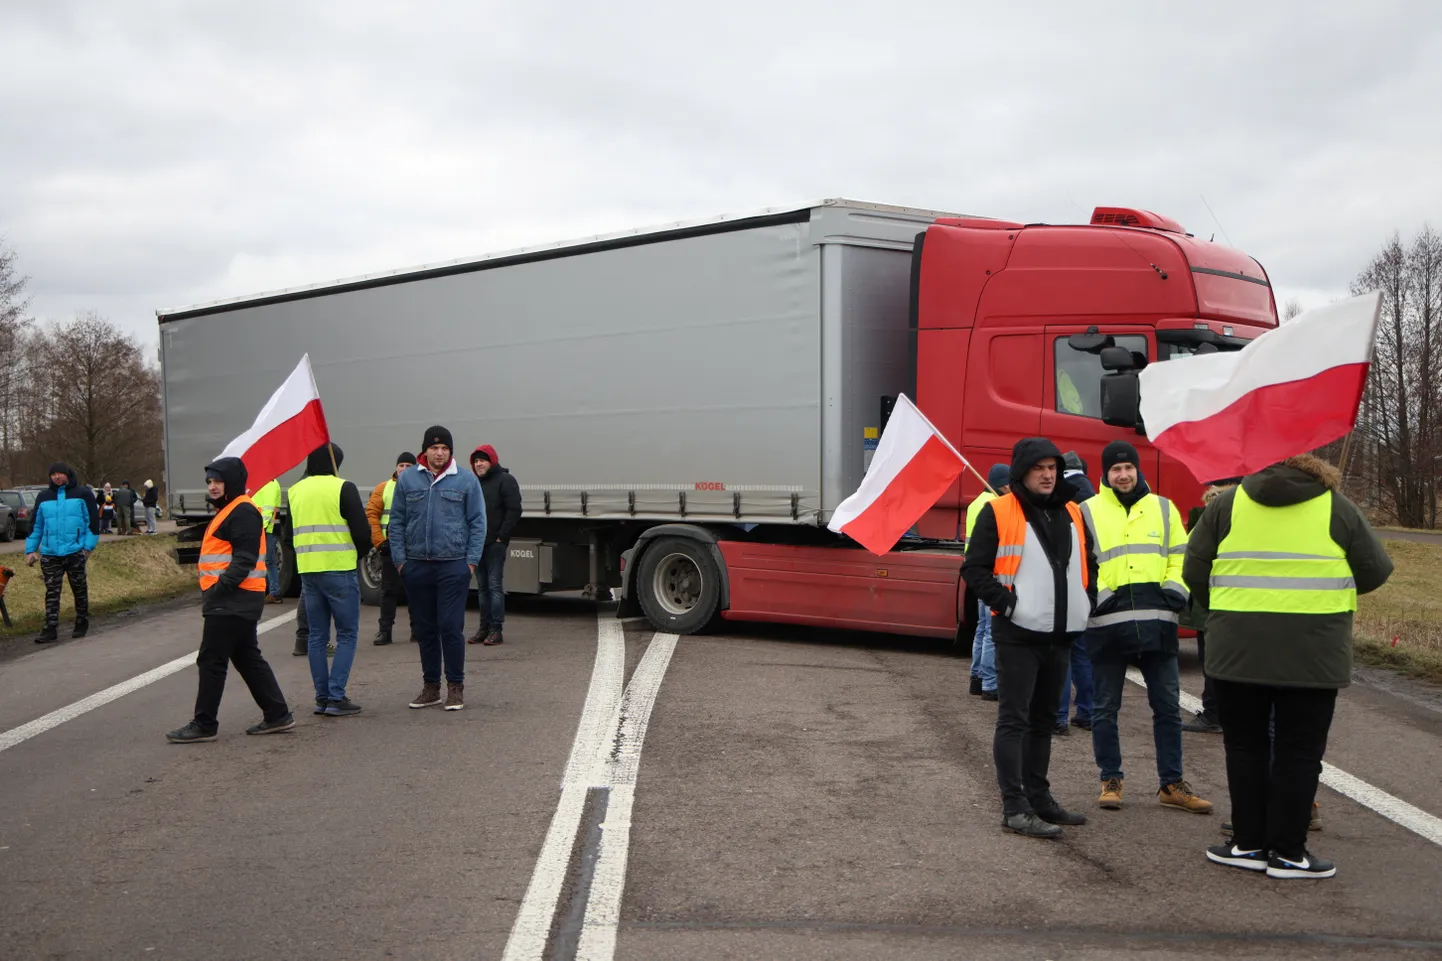 Польские фермеры протестуют против ценового давления, налогов и экологического регулирования, которым недовольны фермеры по всей Европе, а также против импорта сельскохозяйственной продукции и продуктов питания из Украины.